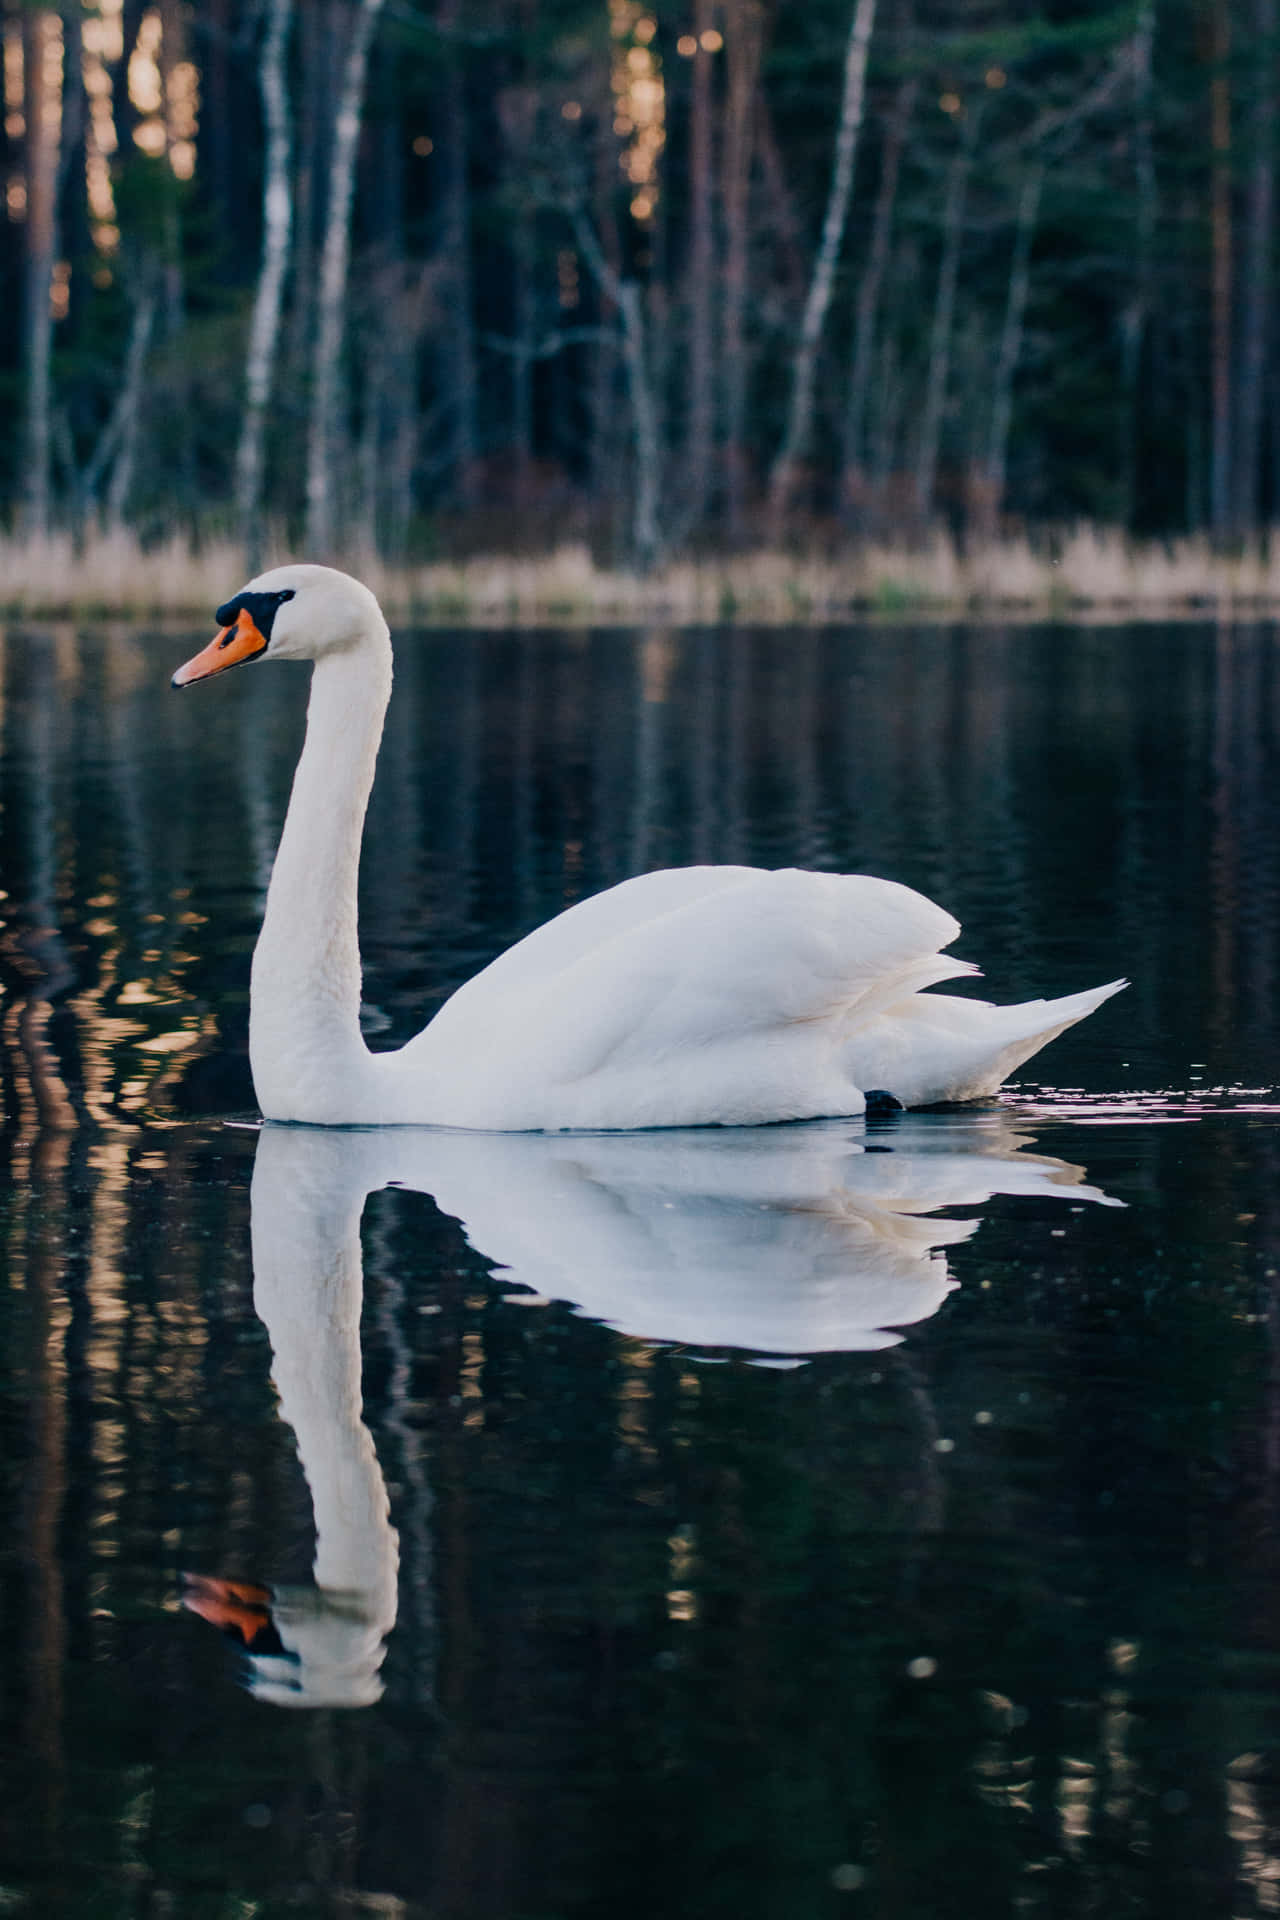 Imagende Un Cisne En Un Lago En El Bosque